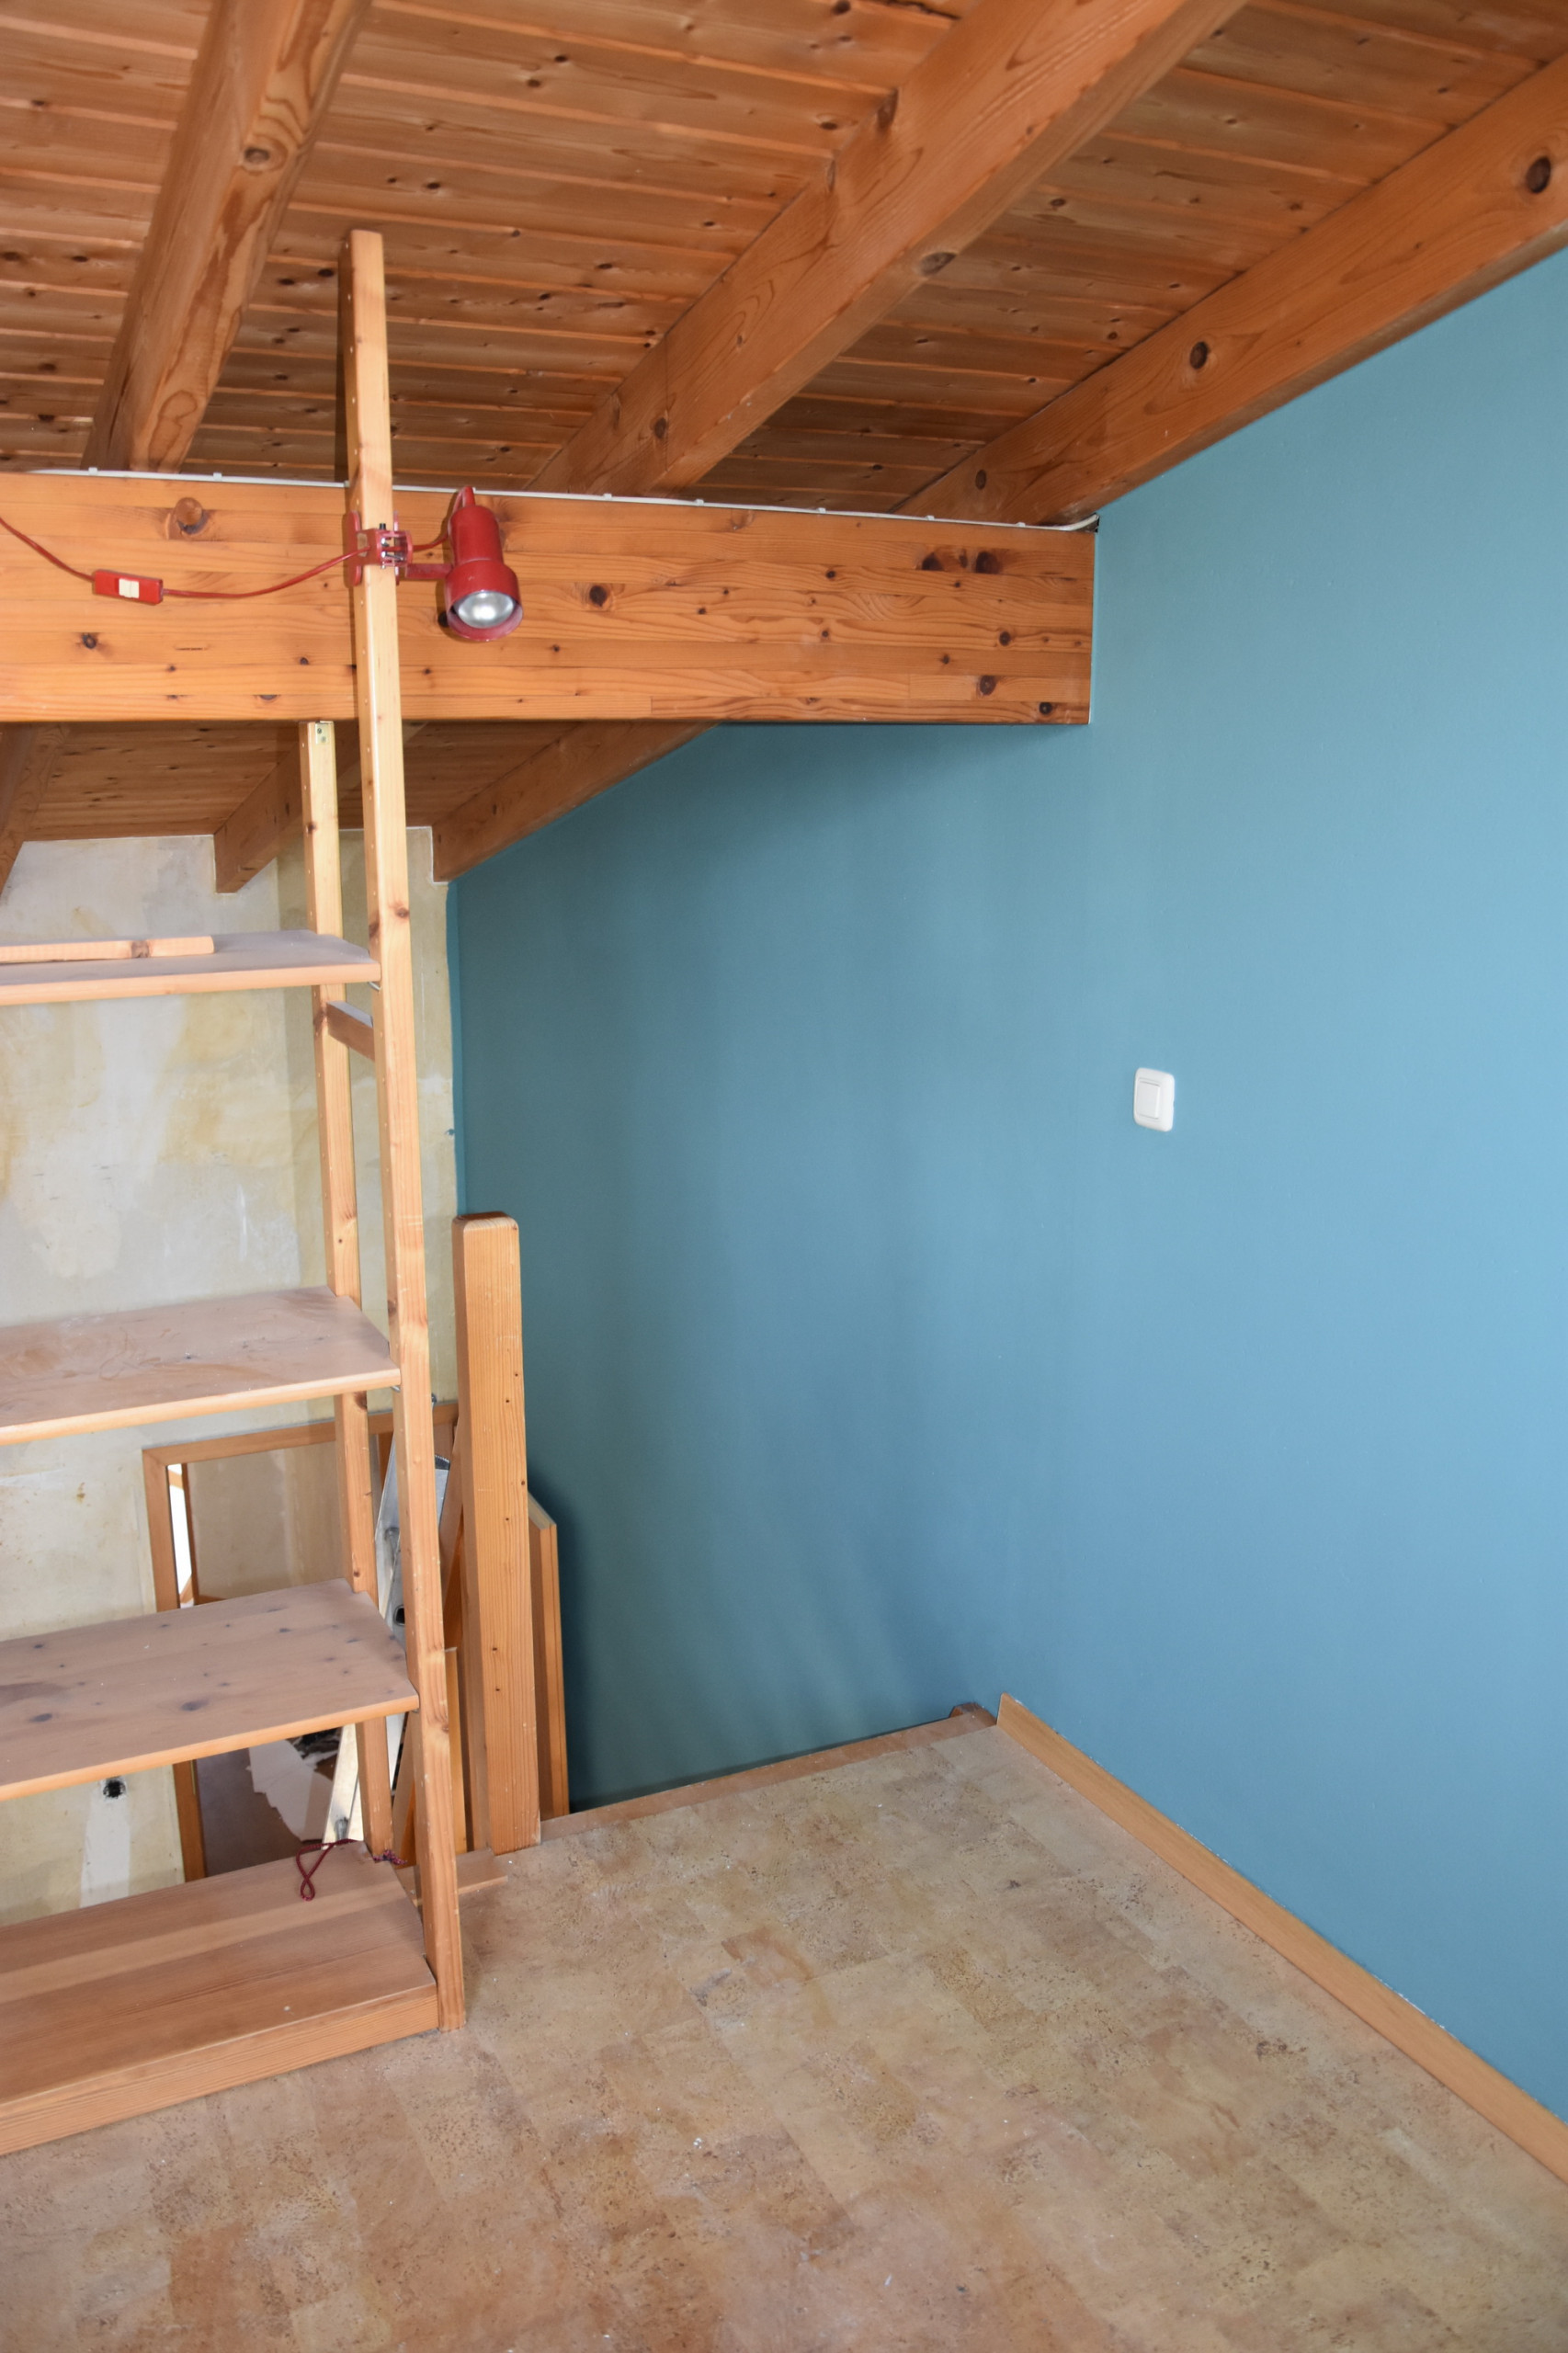 Der blaugrüne Ton auf Mittelwand:  großzügige Raumhöhe von 7,5 m.